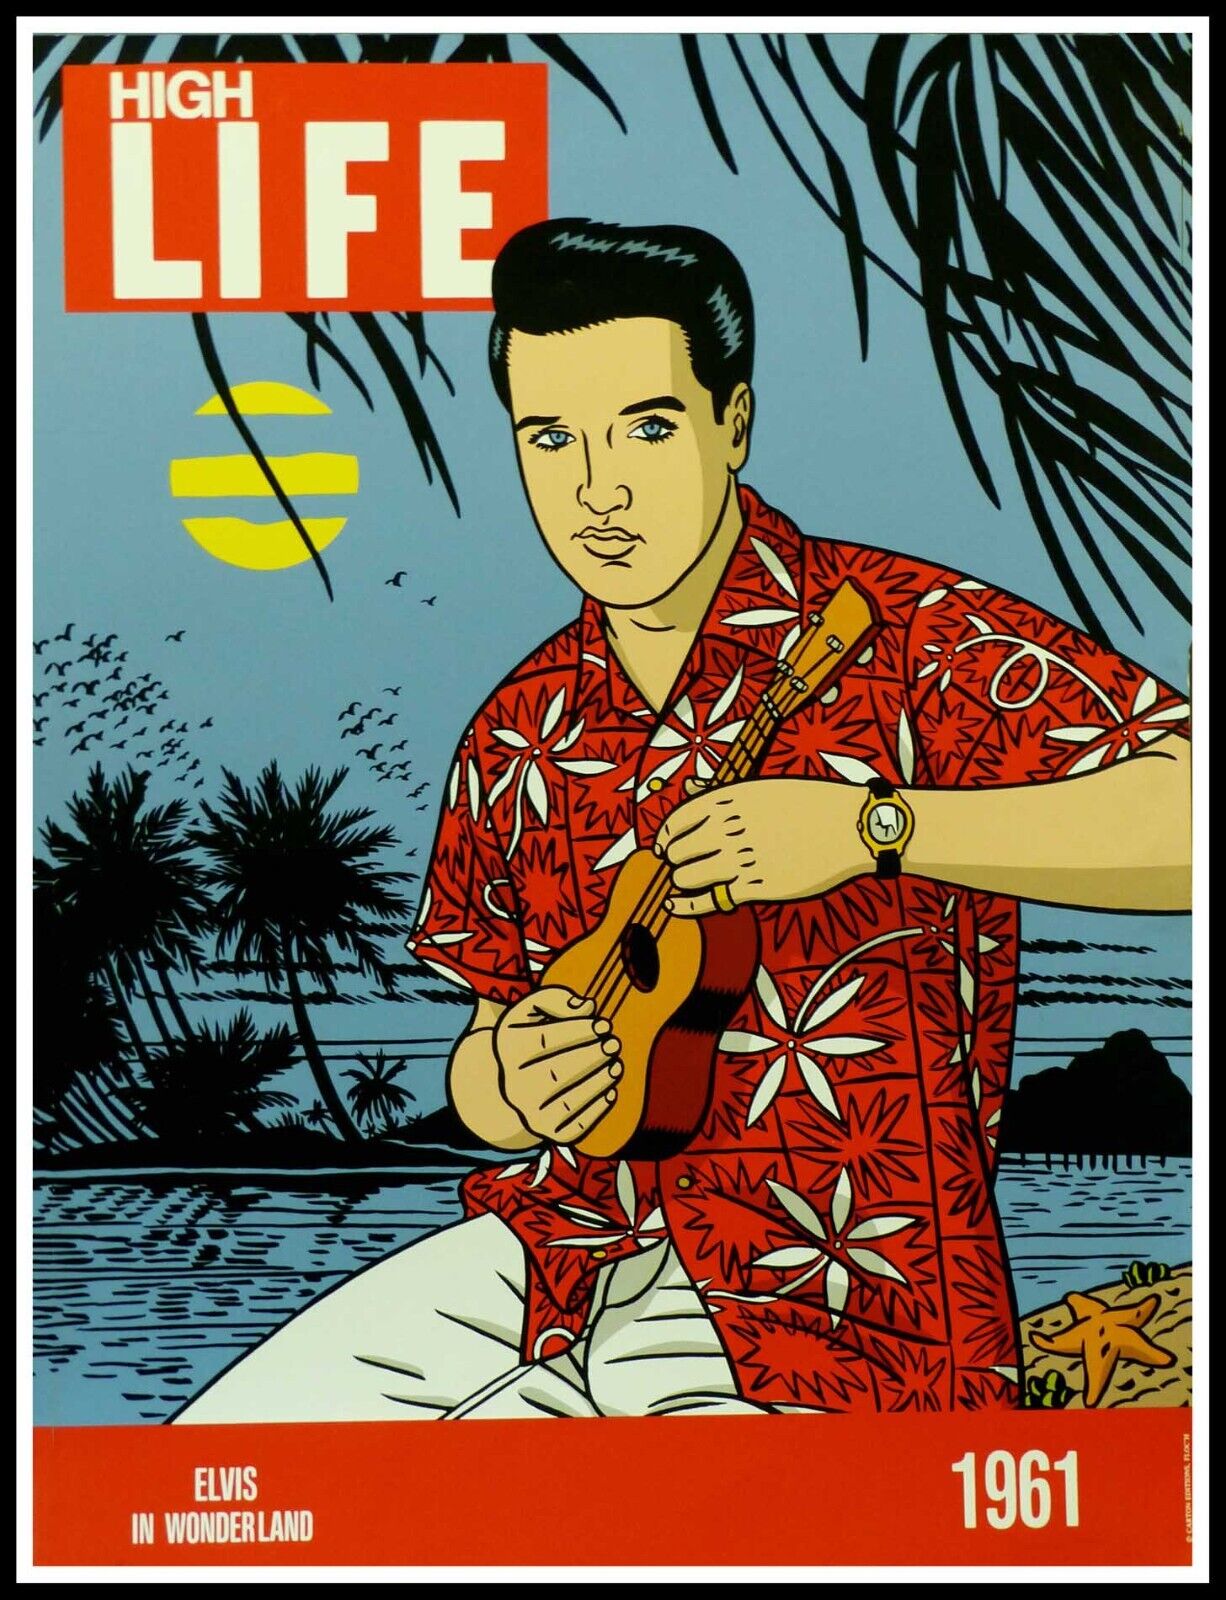 Original Vintage Poster, High Life Elvis Presley in the Wonderland, 1961